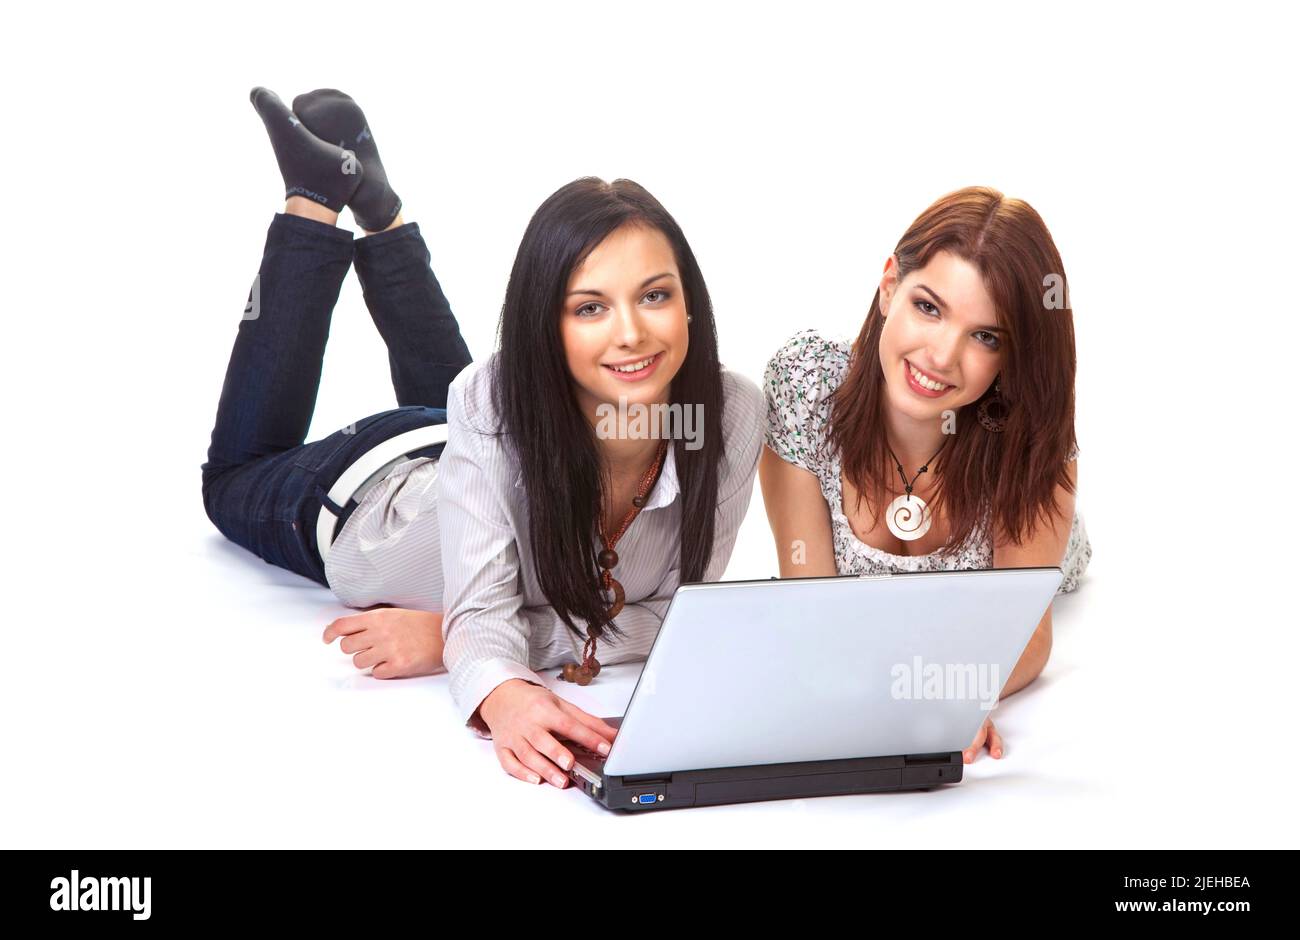 Zwei junge Frauen lachen und arbeiten gemeinsam an einem laptop, 20, 25, Jahre, Studentinnen, Studenten, Foto Stock